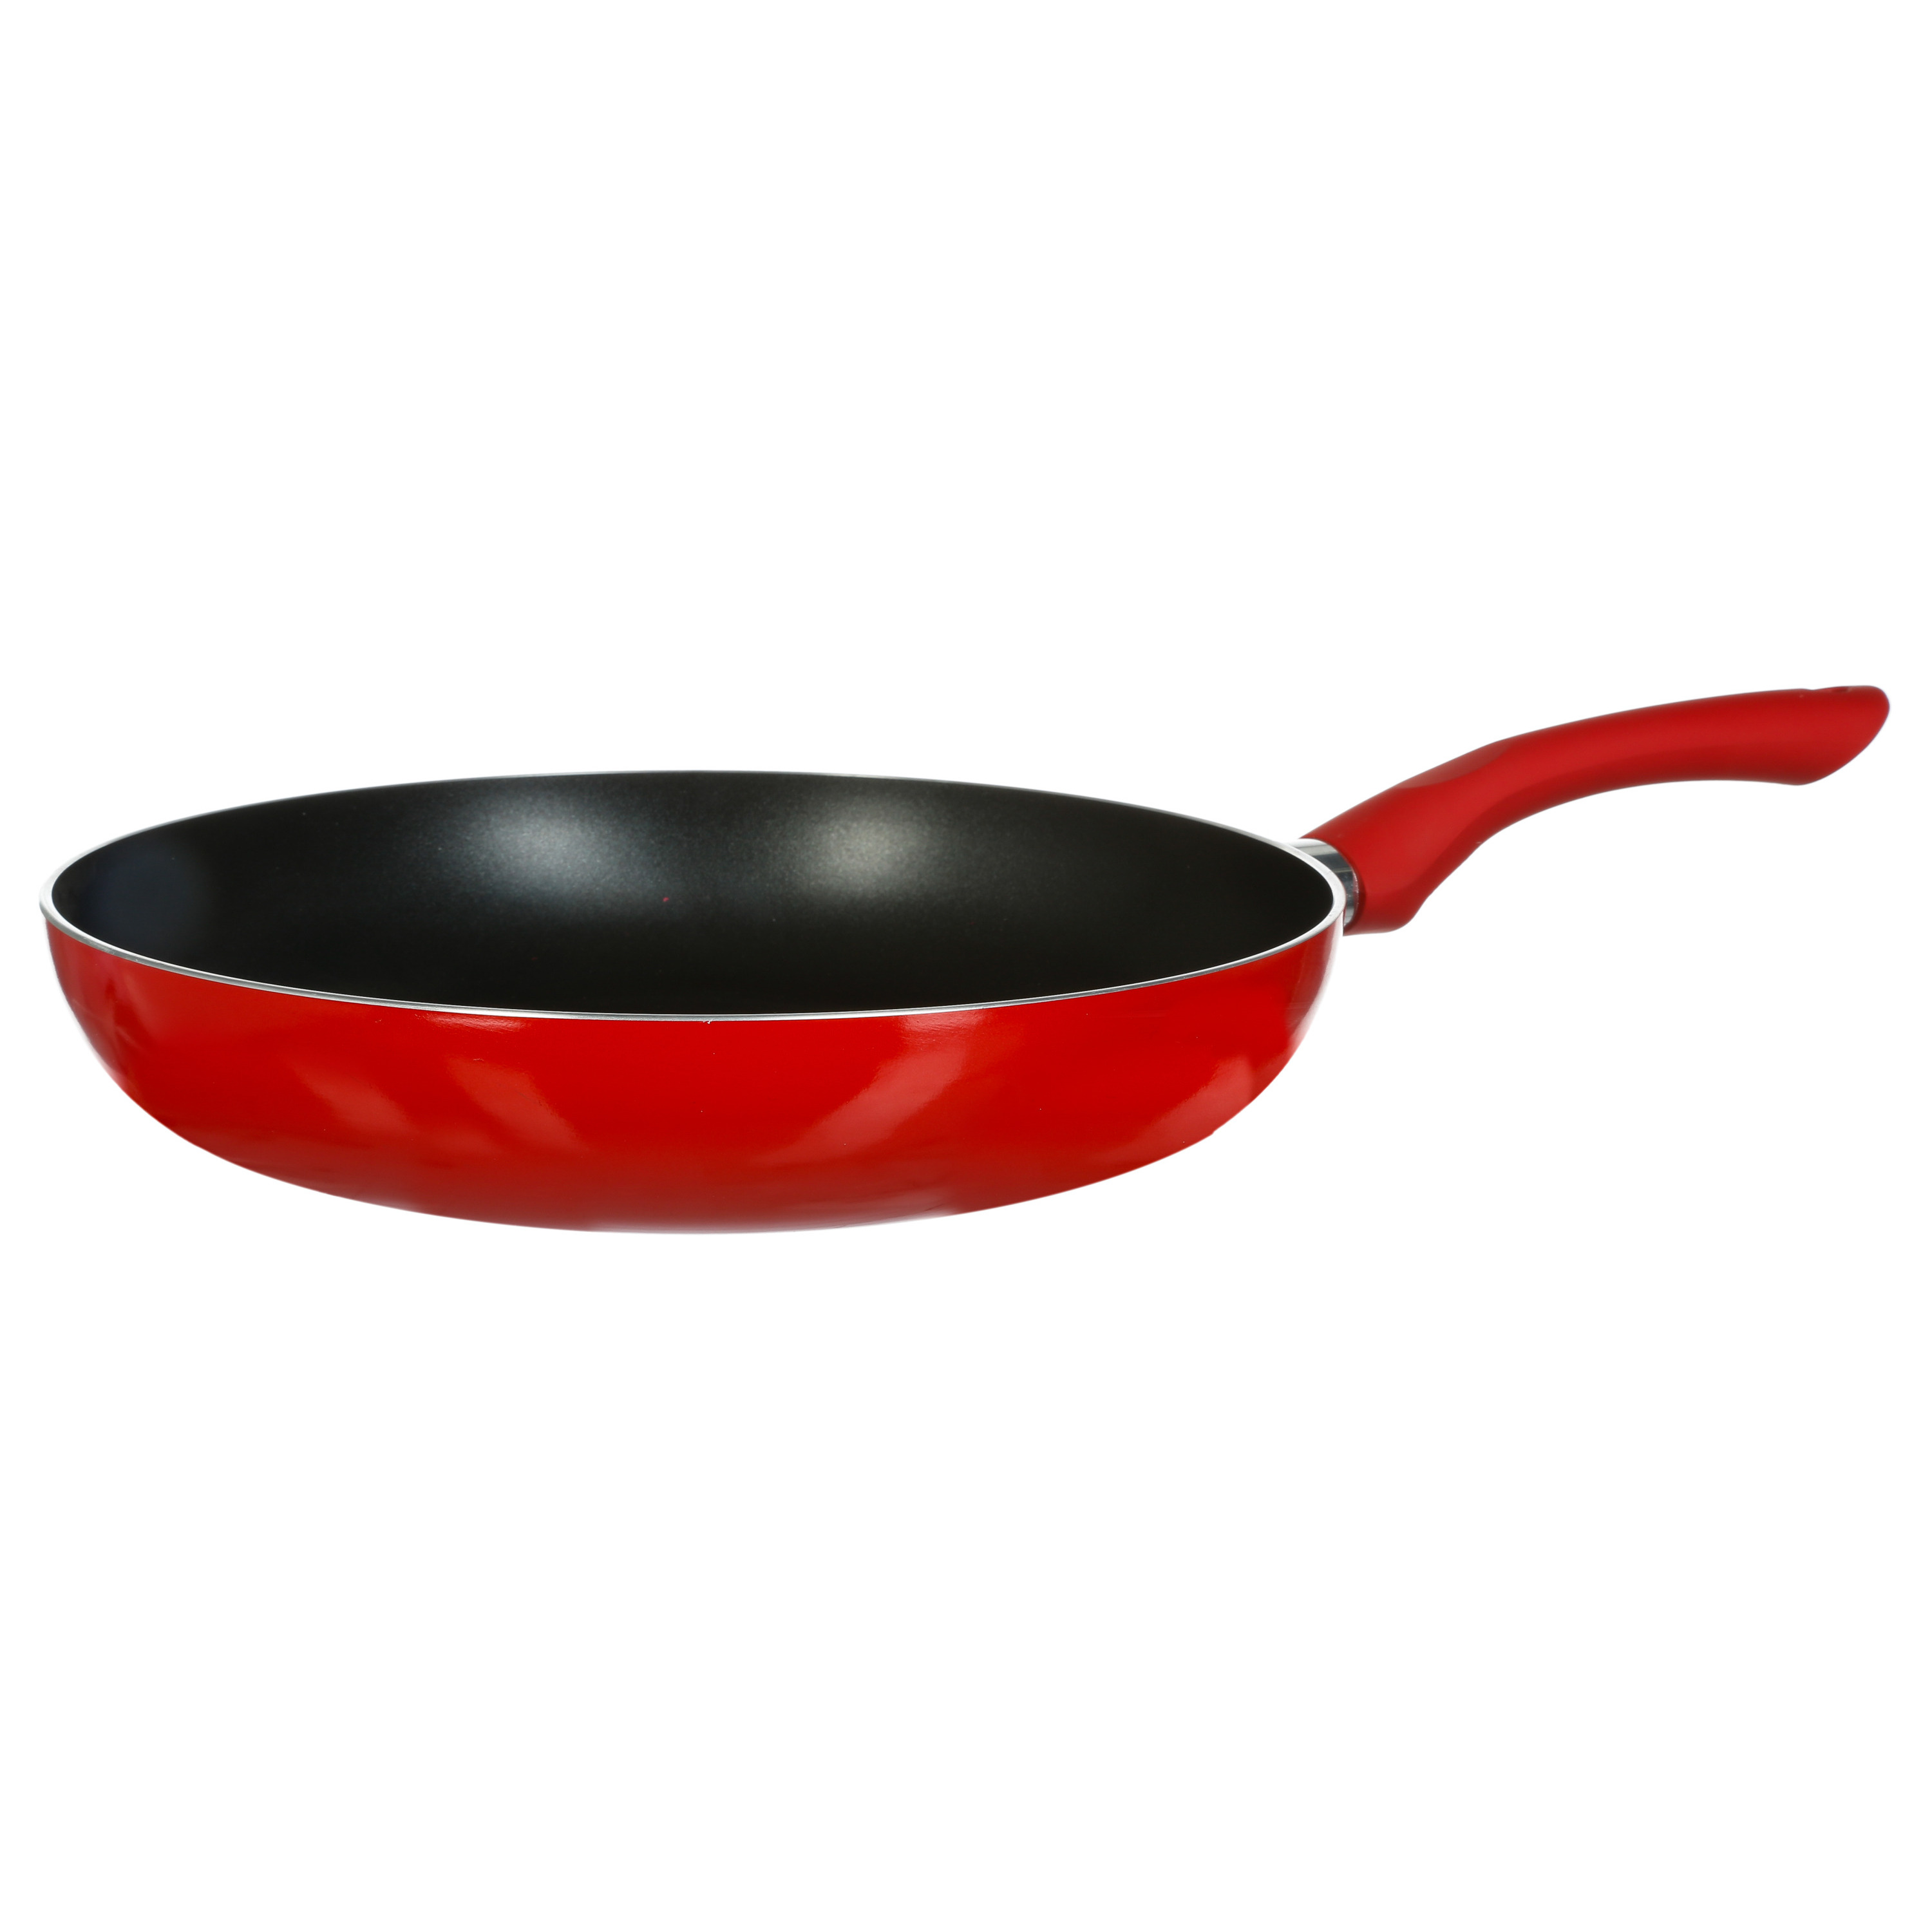 Koekenpan Alle kookplaten geschikt rood-zwart dia 31 cm